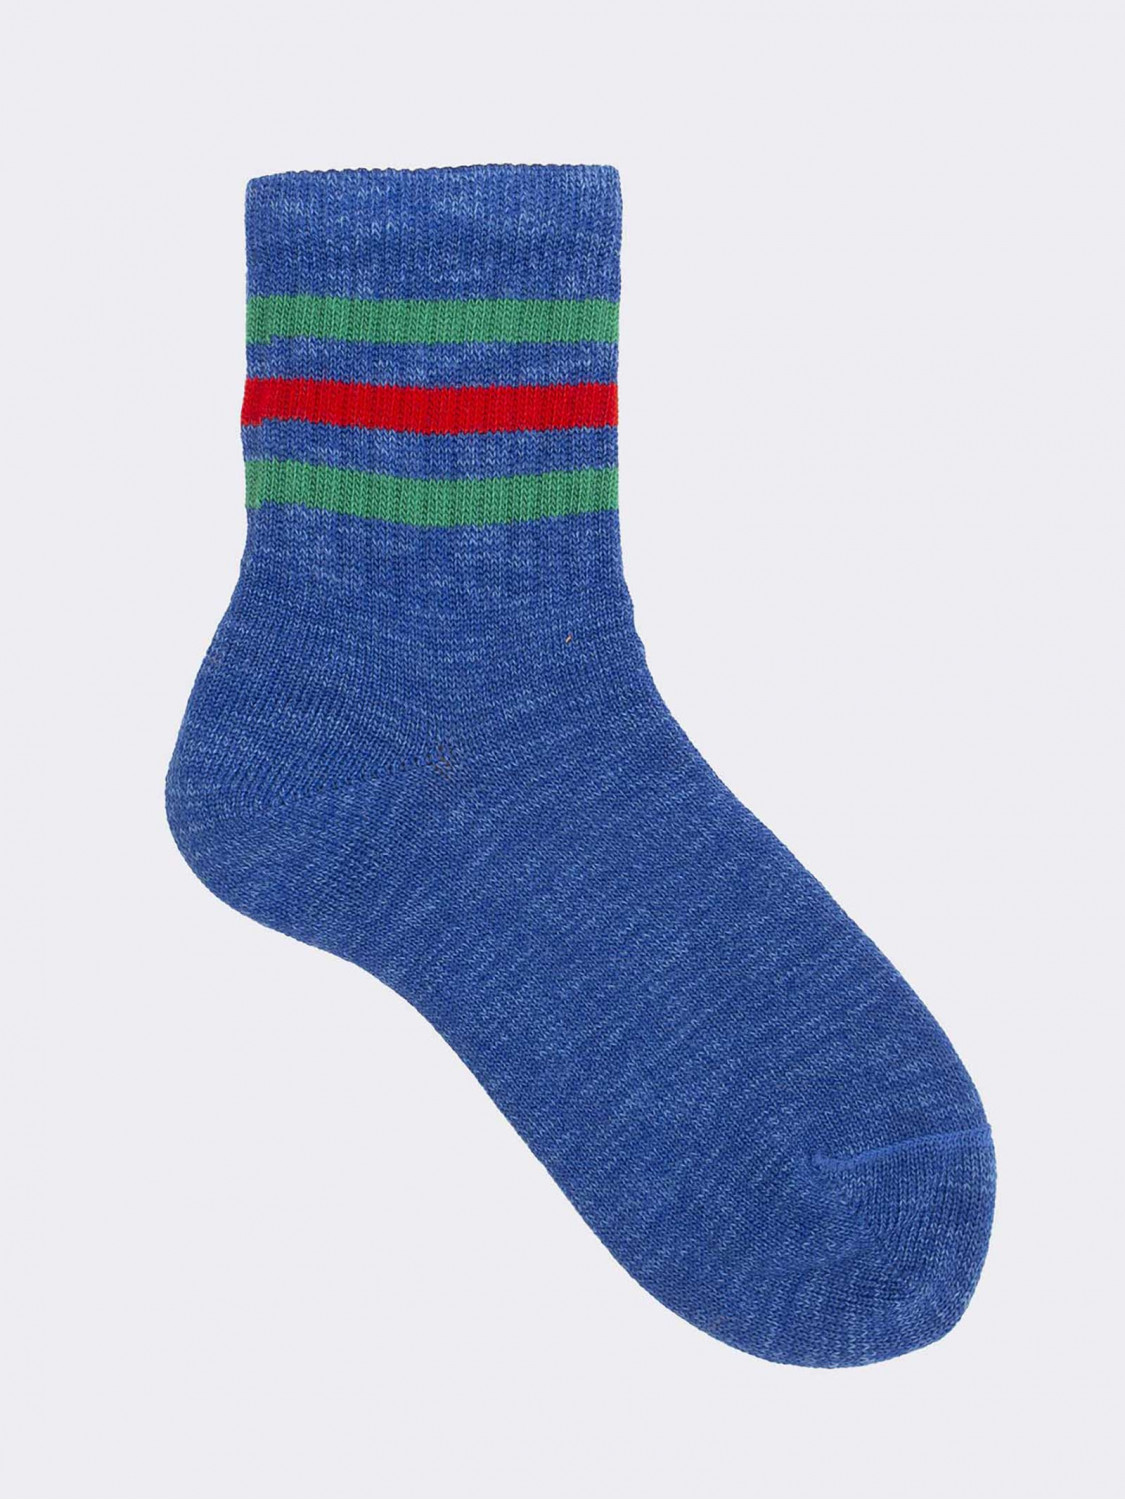 Boston Pattern Short Socks in Cotton